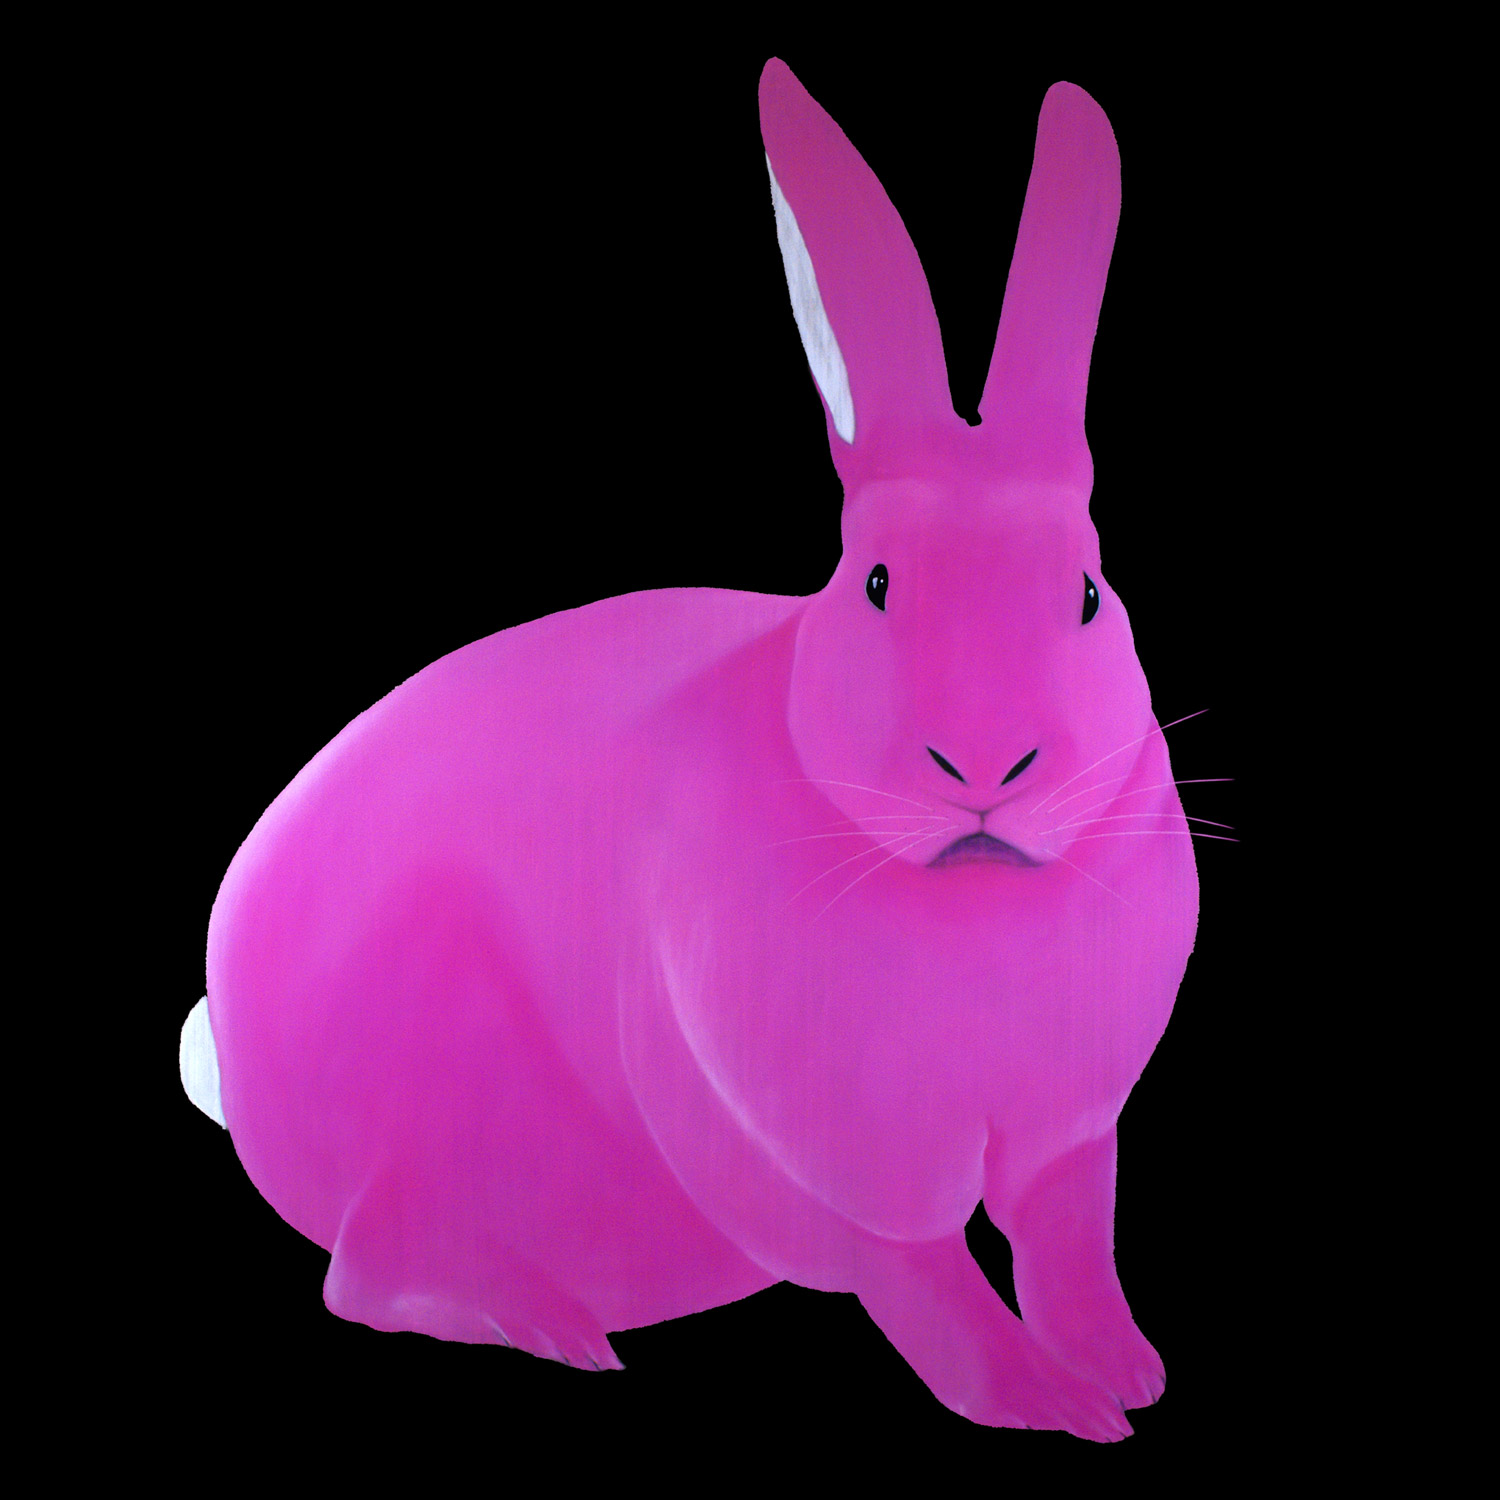 The Pink Rabbit - Thierry Bisch